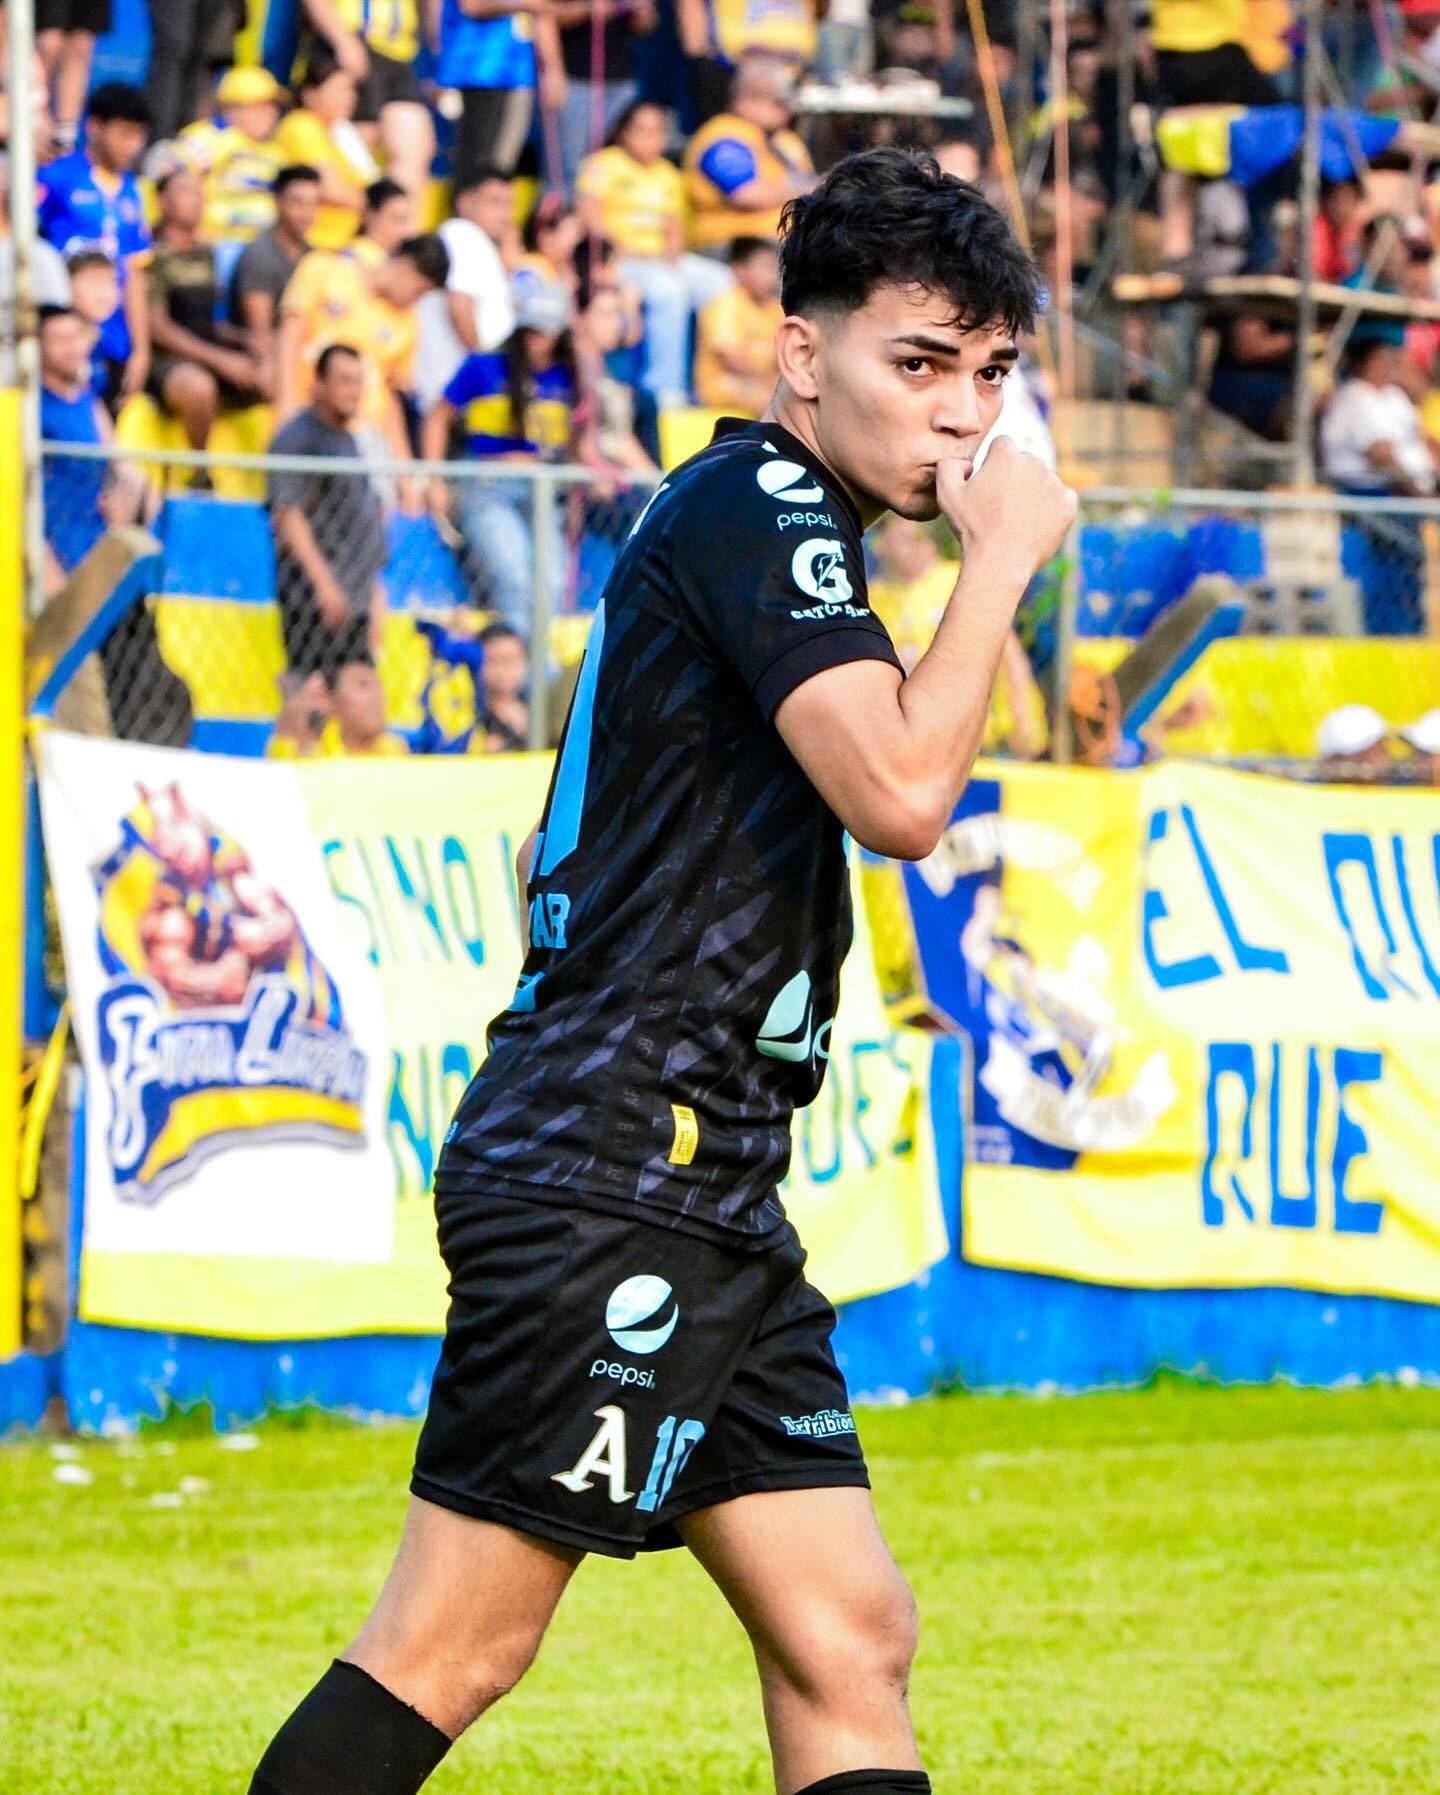 Leonardo Menjívar convirtió su primer gol con Alianza, un equipo tradicional de El Salvador. Él es ficha de Liga Deportiva Alajuelense.